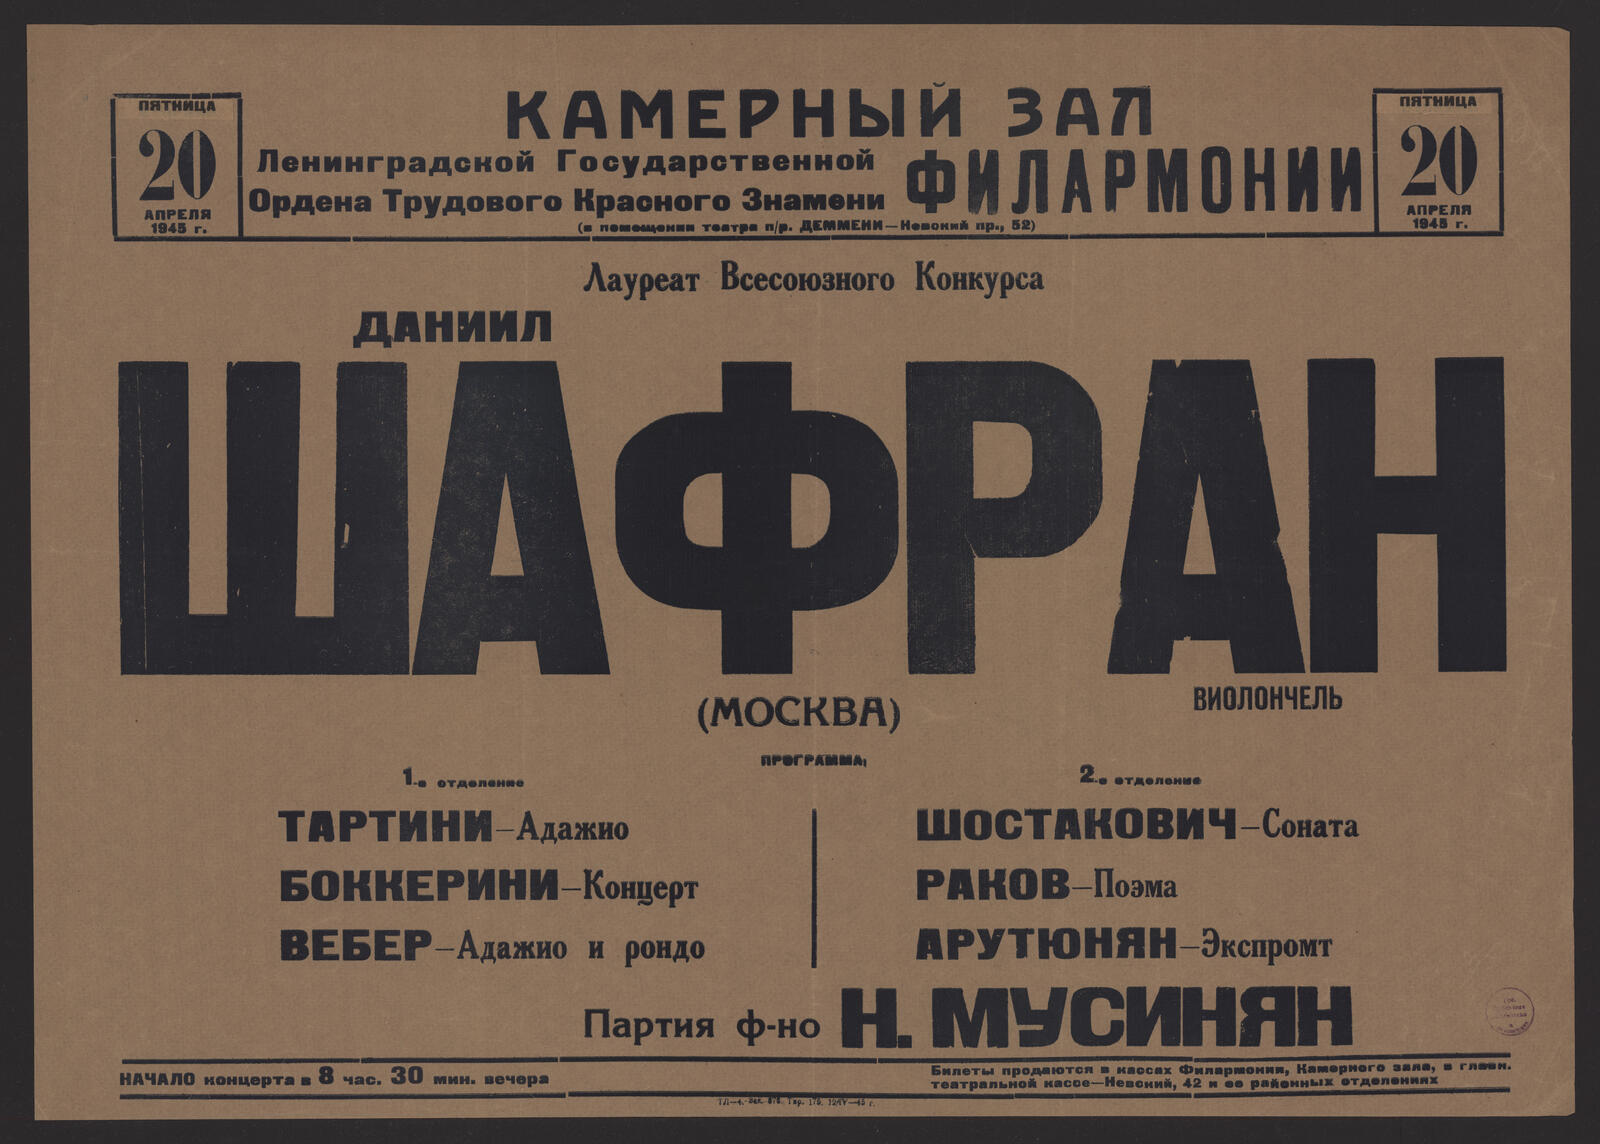 Изображение книги Лауреат Всесоюзного Конкурса Даниил Шафран. Виолончель. (Москва), пятница 20 апреля 1945 г.